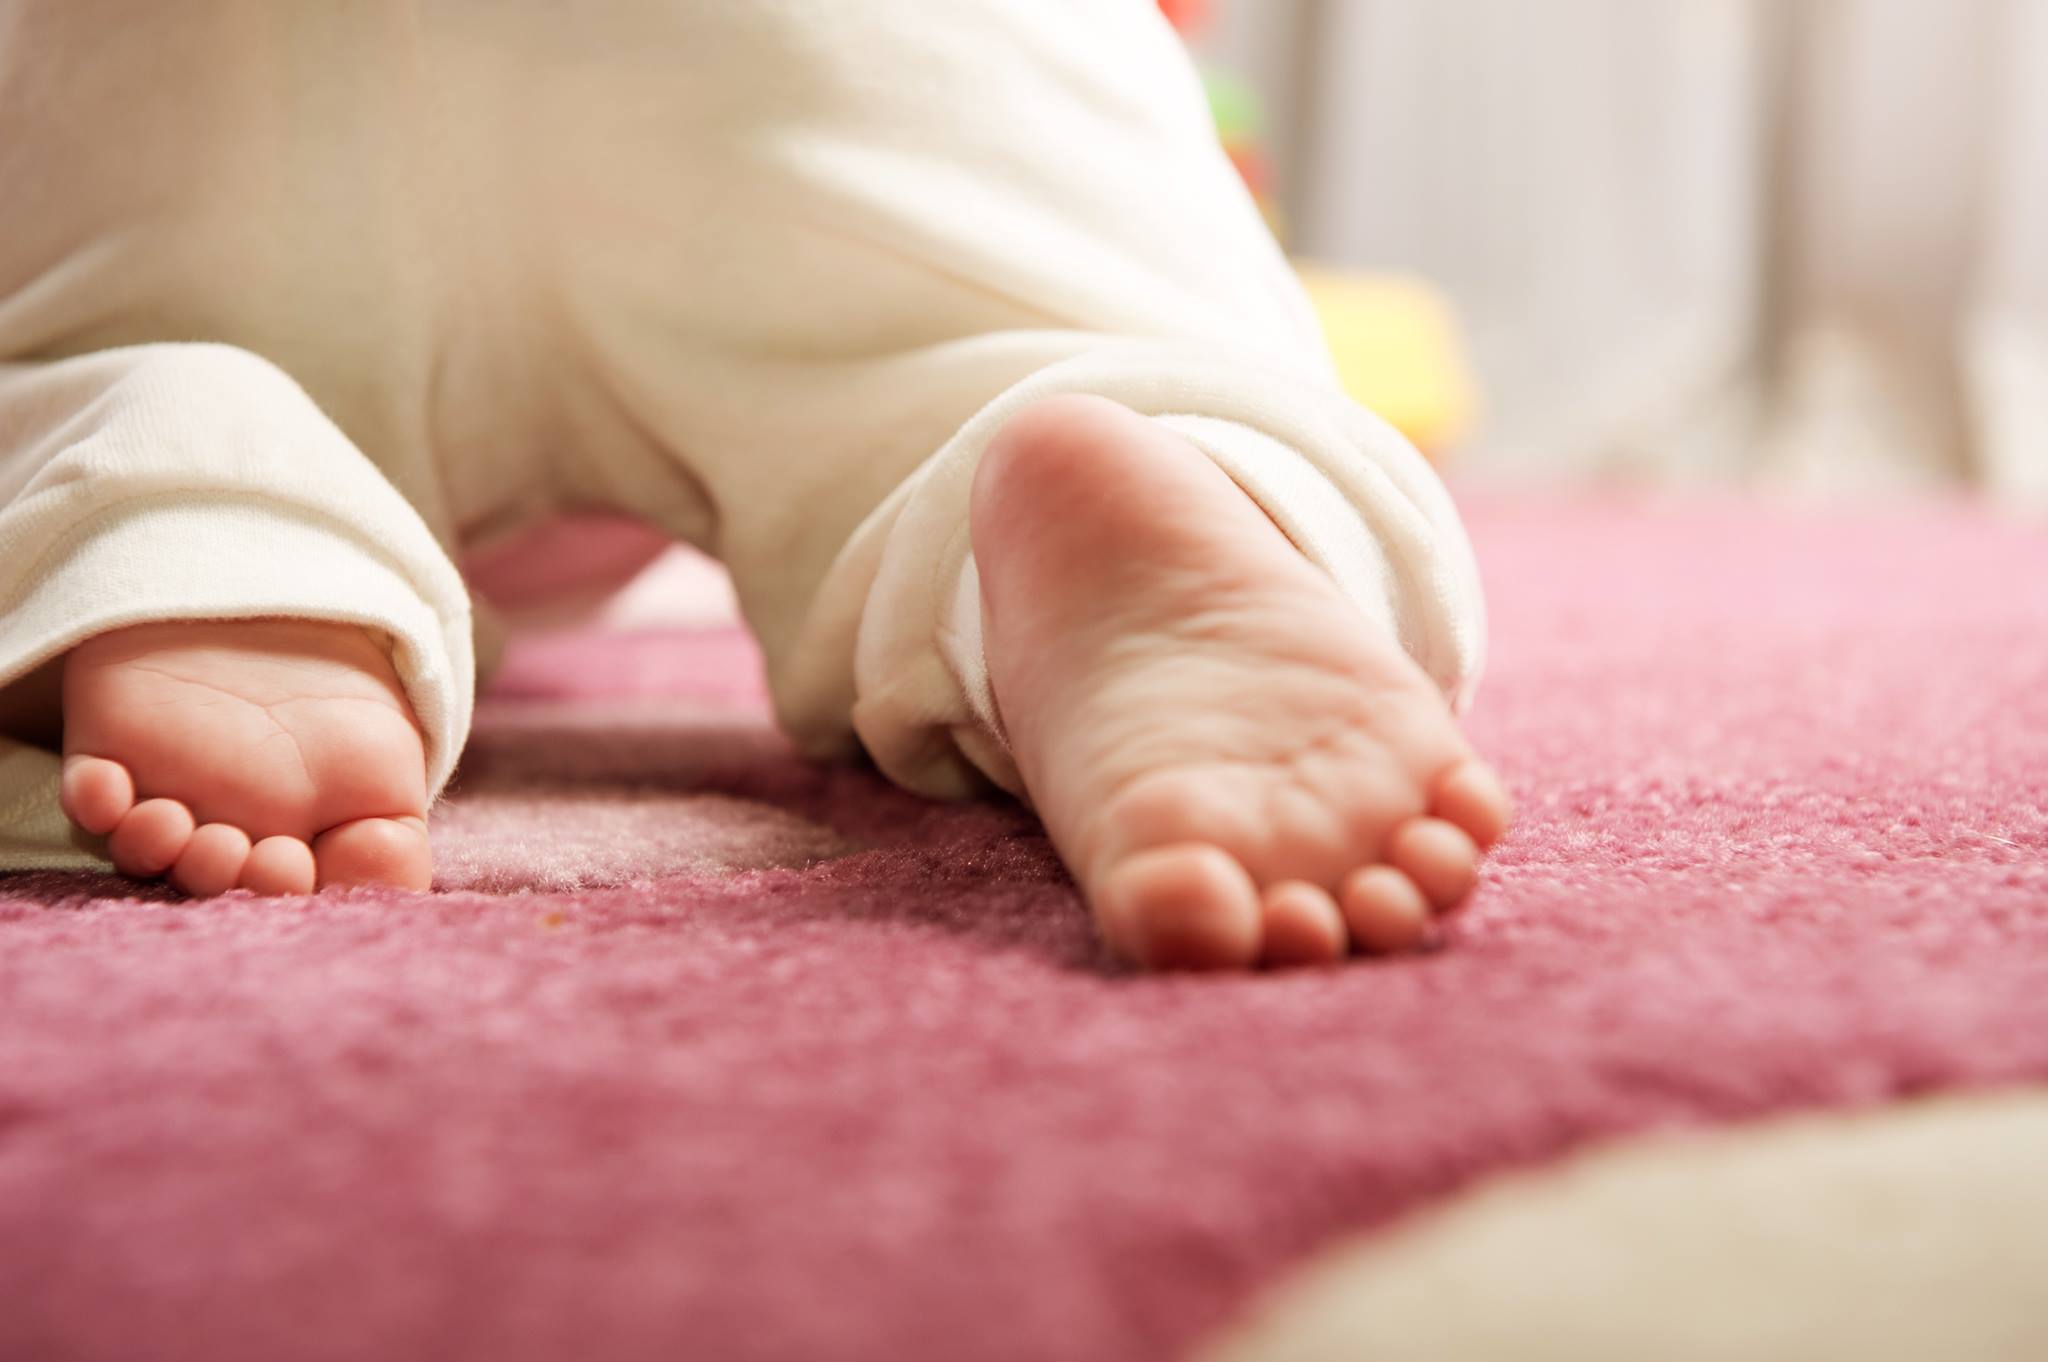 Ножки в 6 месяцев. Ноги младенца. Младенец ползает. Стопы детей девочек. Детские ножки на ковре.